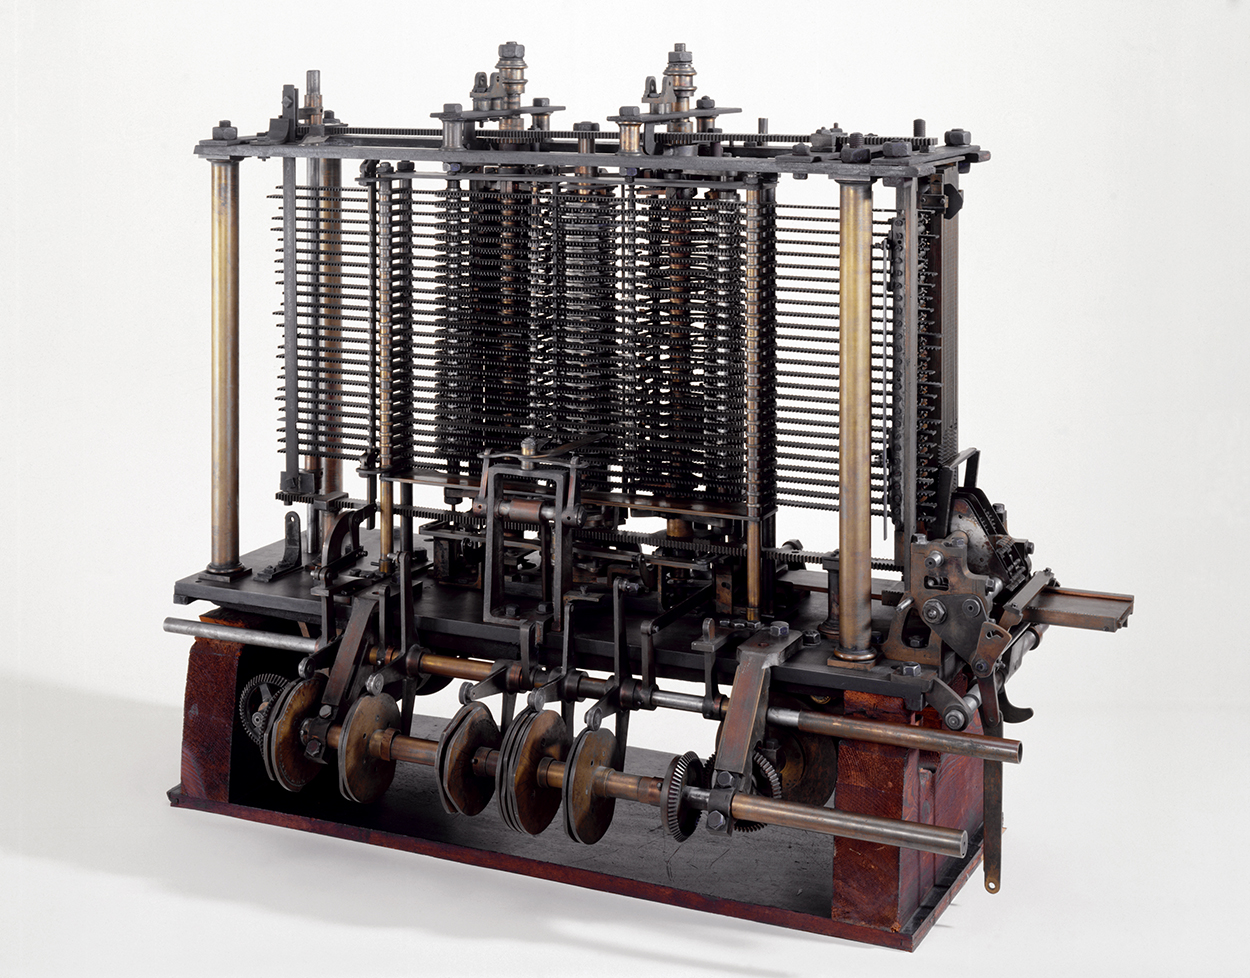 Сегодня мало кто задумывается, кем именно была изобретена первая аналитическая машина Однако именно это устройство стало прообразом современных ЭВМ